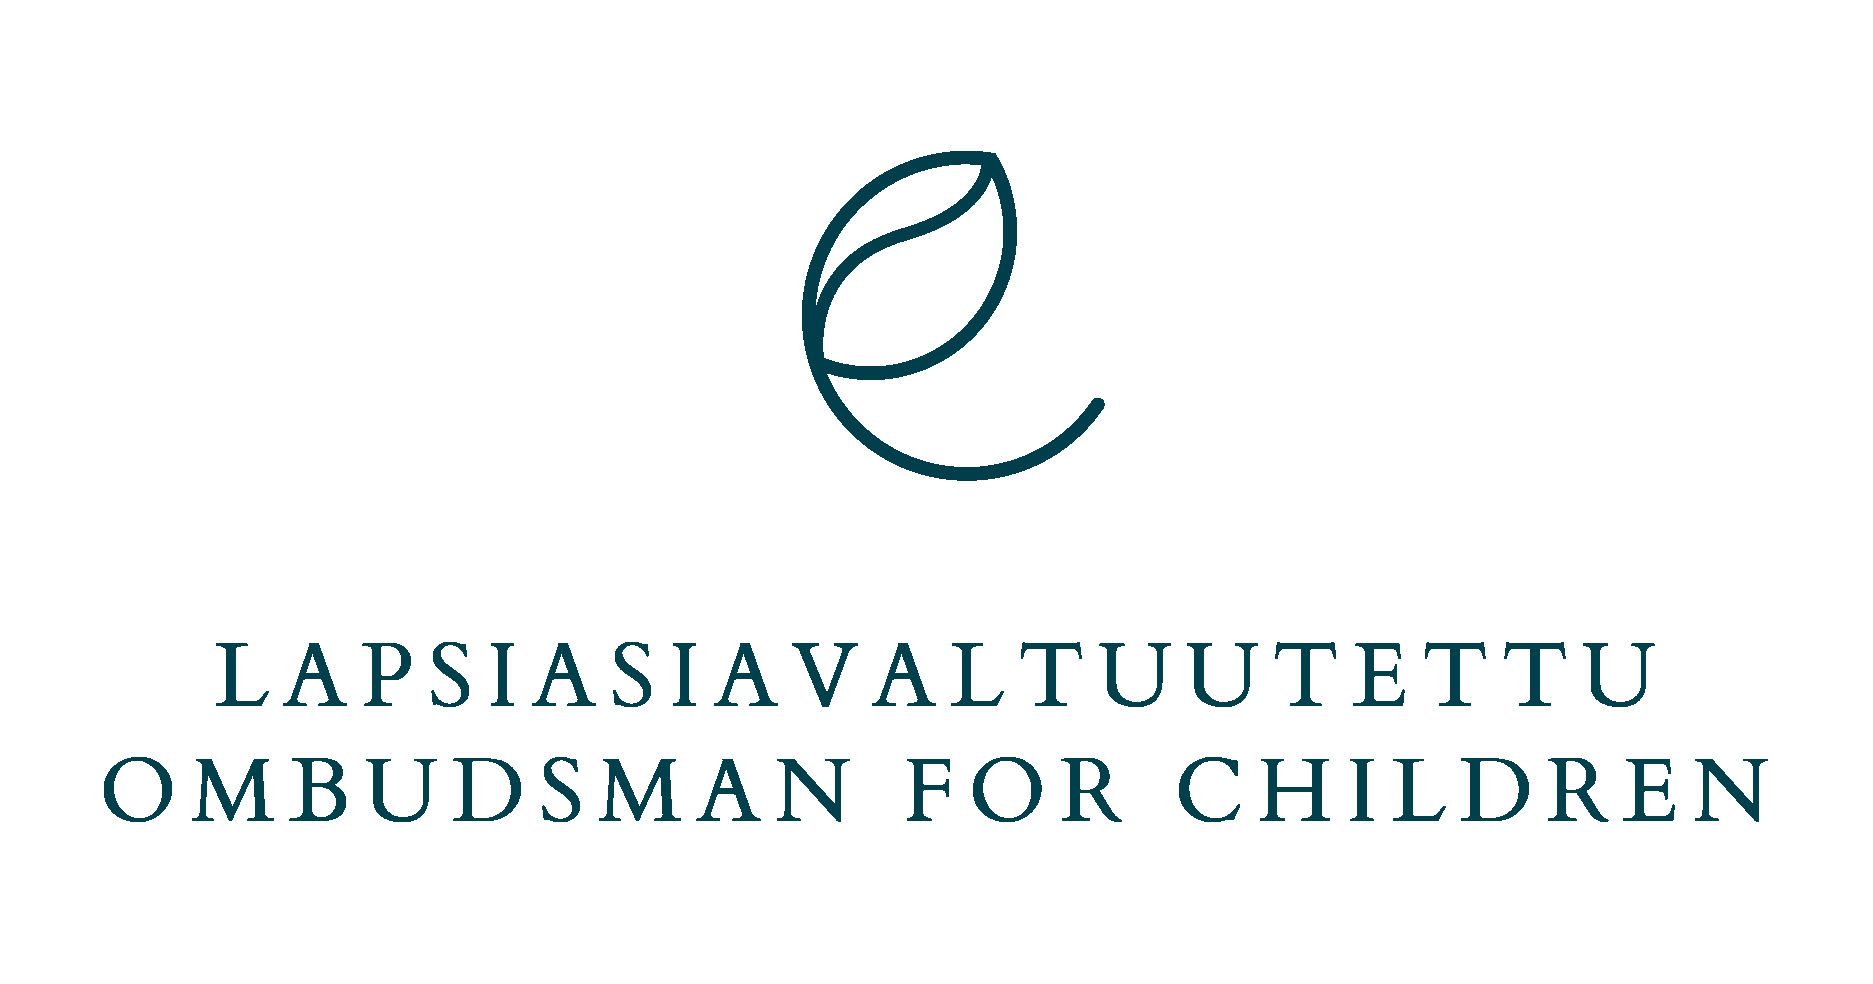 Lapsiasiavaltuutetun logo suomeksi ja englanniksi: Lapsiasiavaltuutettu / Ombudsman for Children.